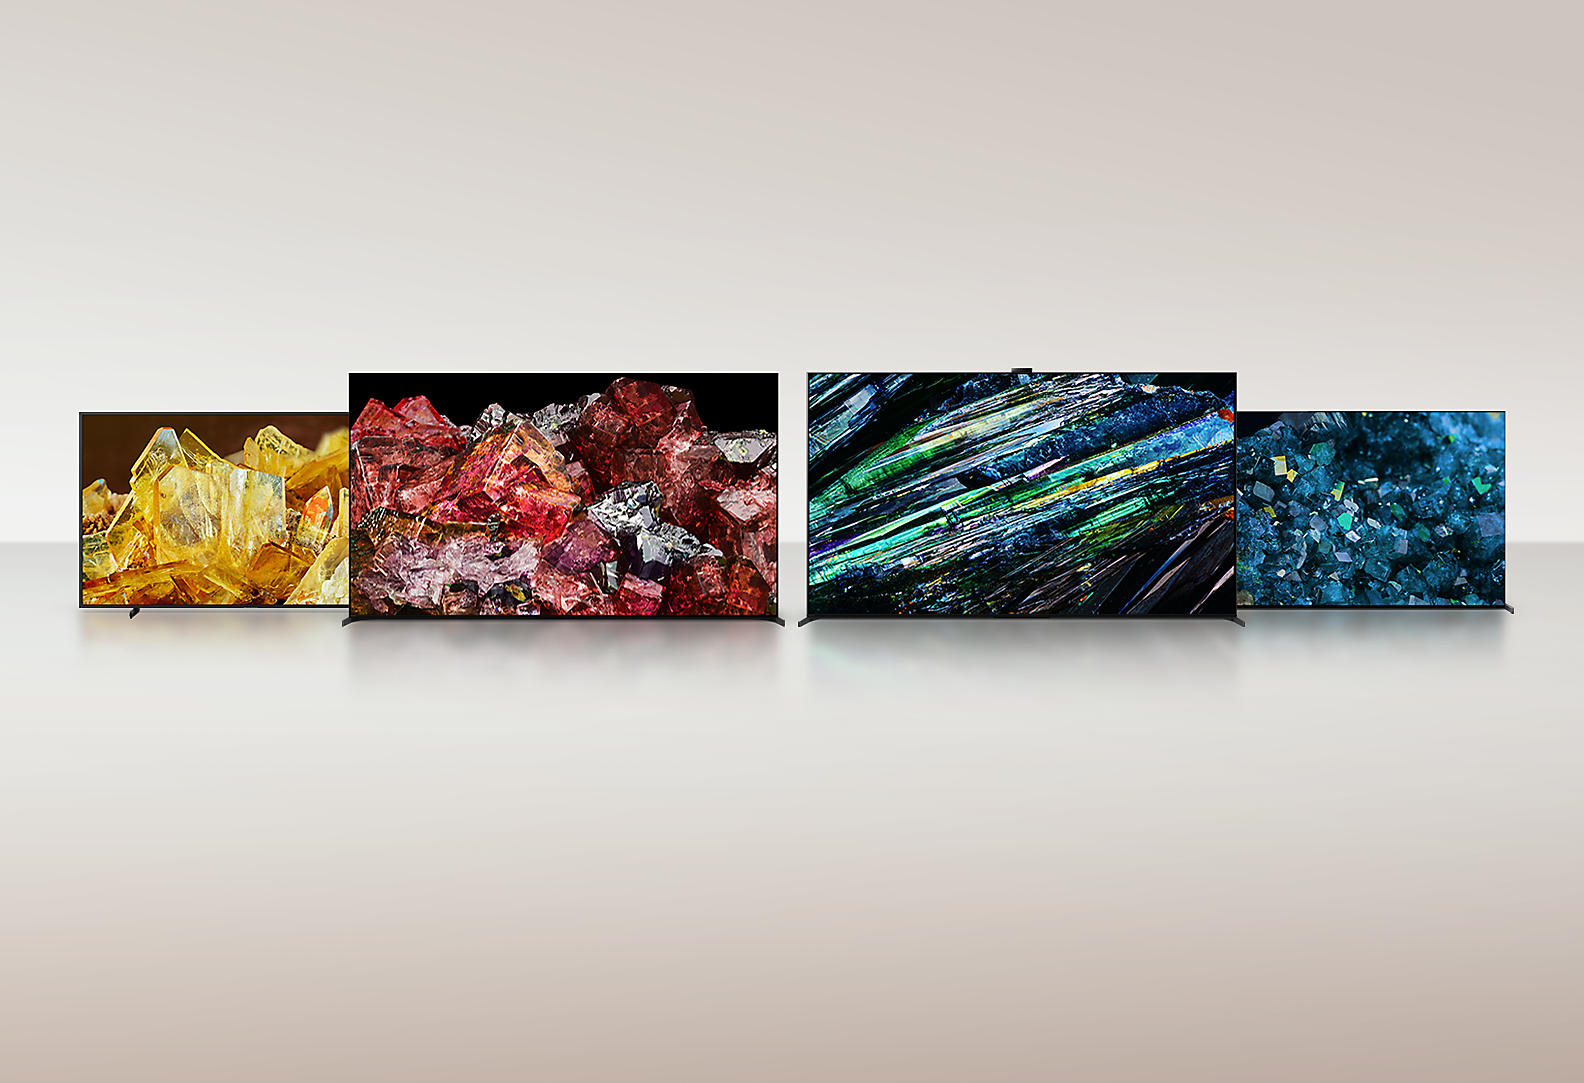 四台 BRAVIA XR 顯示器全螢幕展示不同類型的水晶，畫面細節和色彩令人為觀止